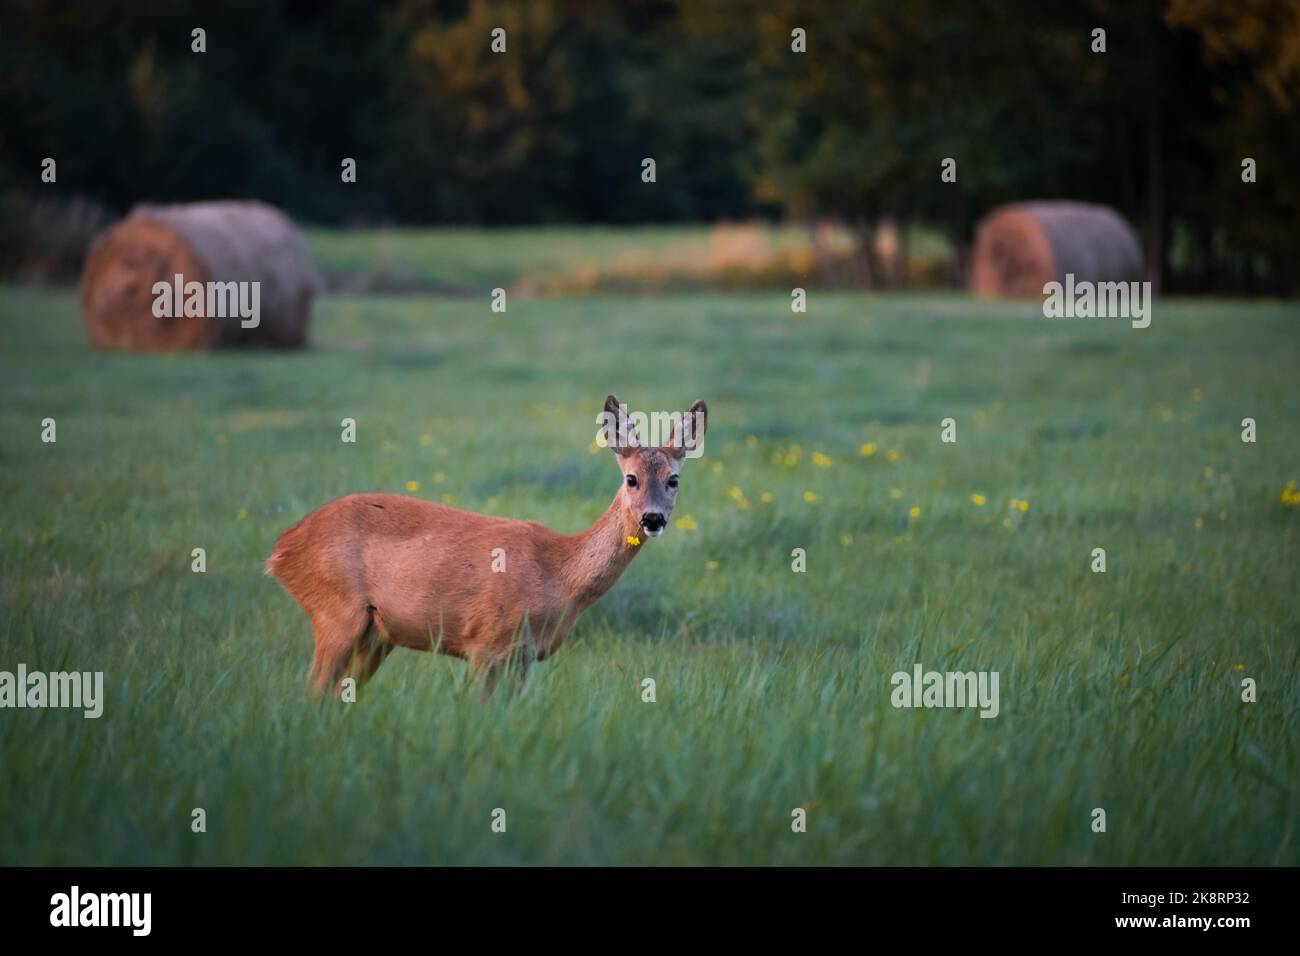 Un beau cerf debout au milieu d'un champ avec de l'herbe fraîche Banque D'Images